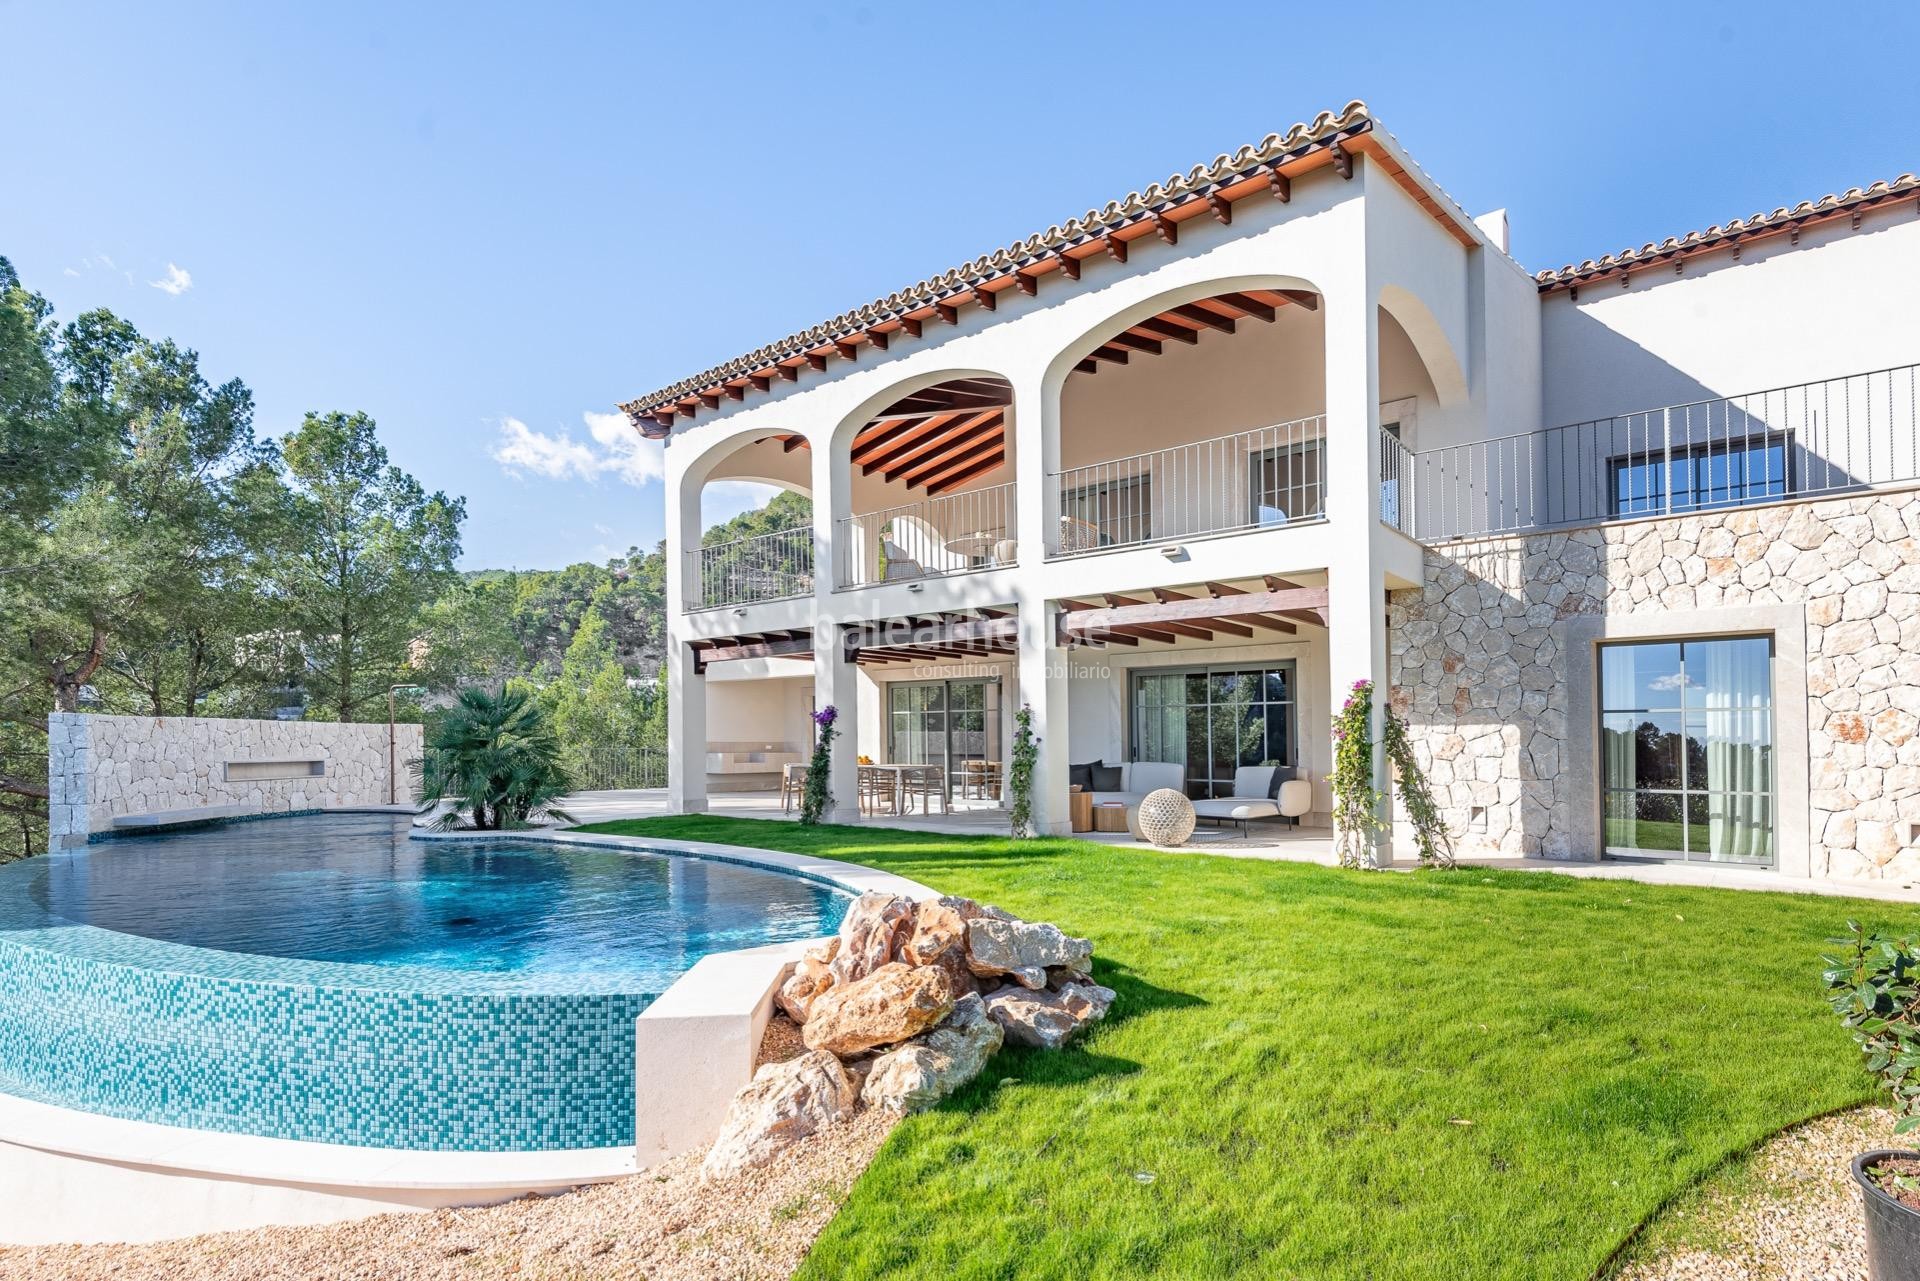 Schöne Villa in Son Vida, eine Mischung aus Tradition und Design mit unglaublichem Meerblick.